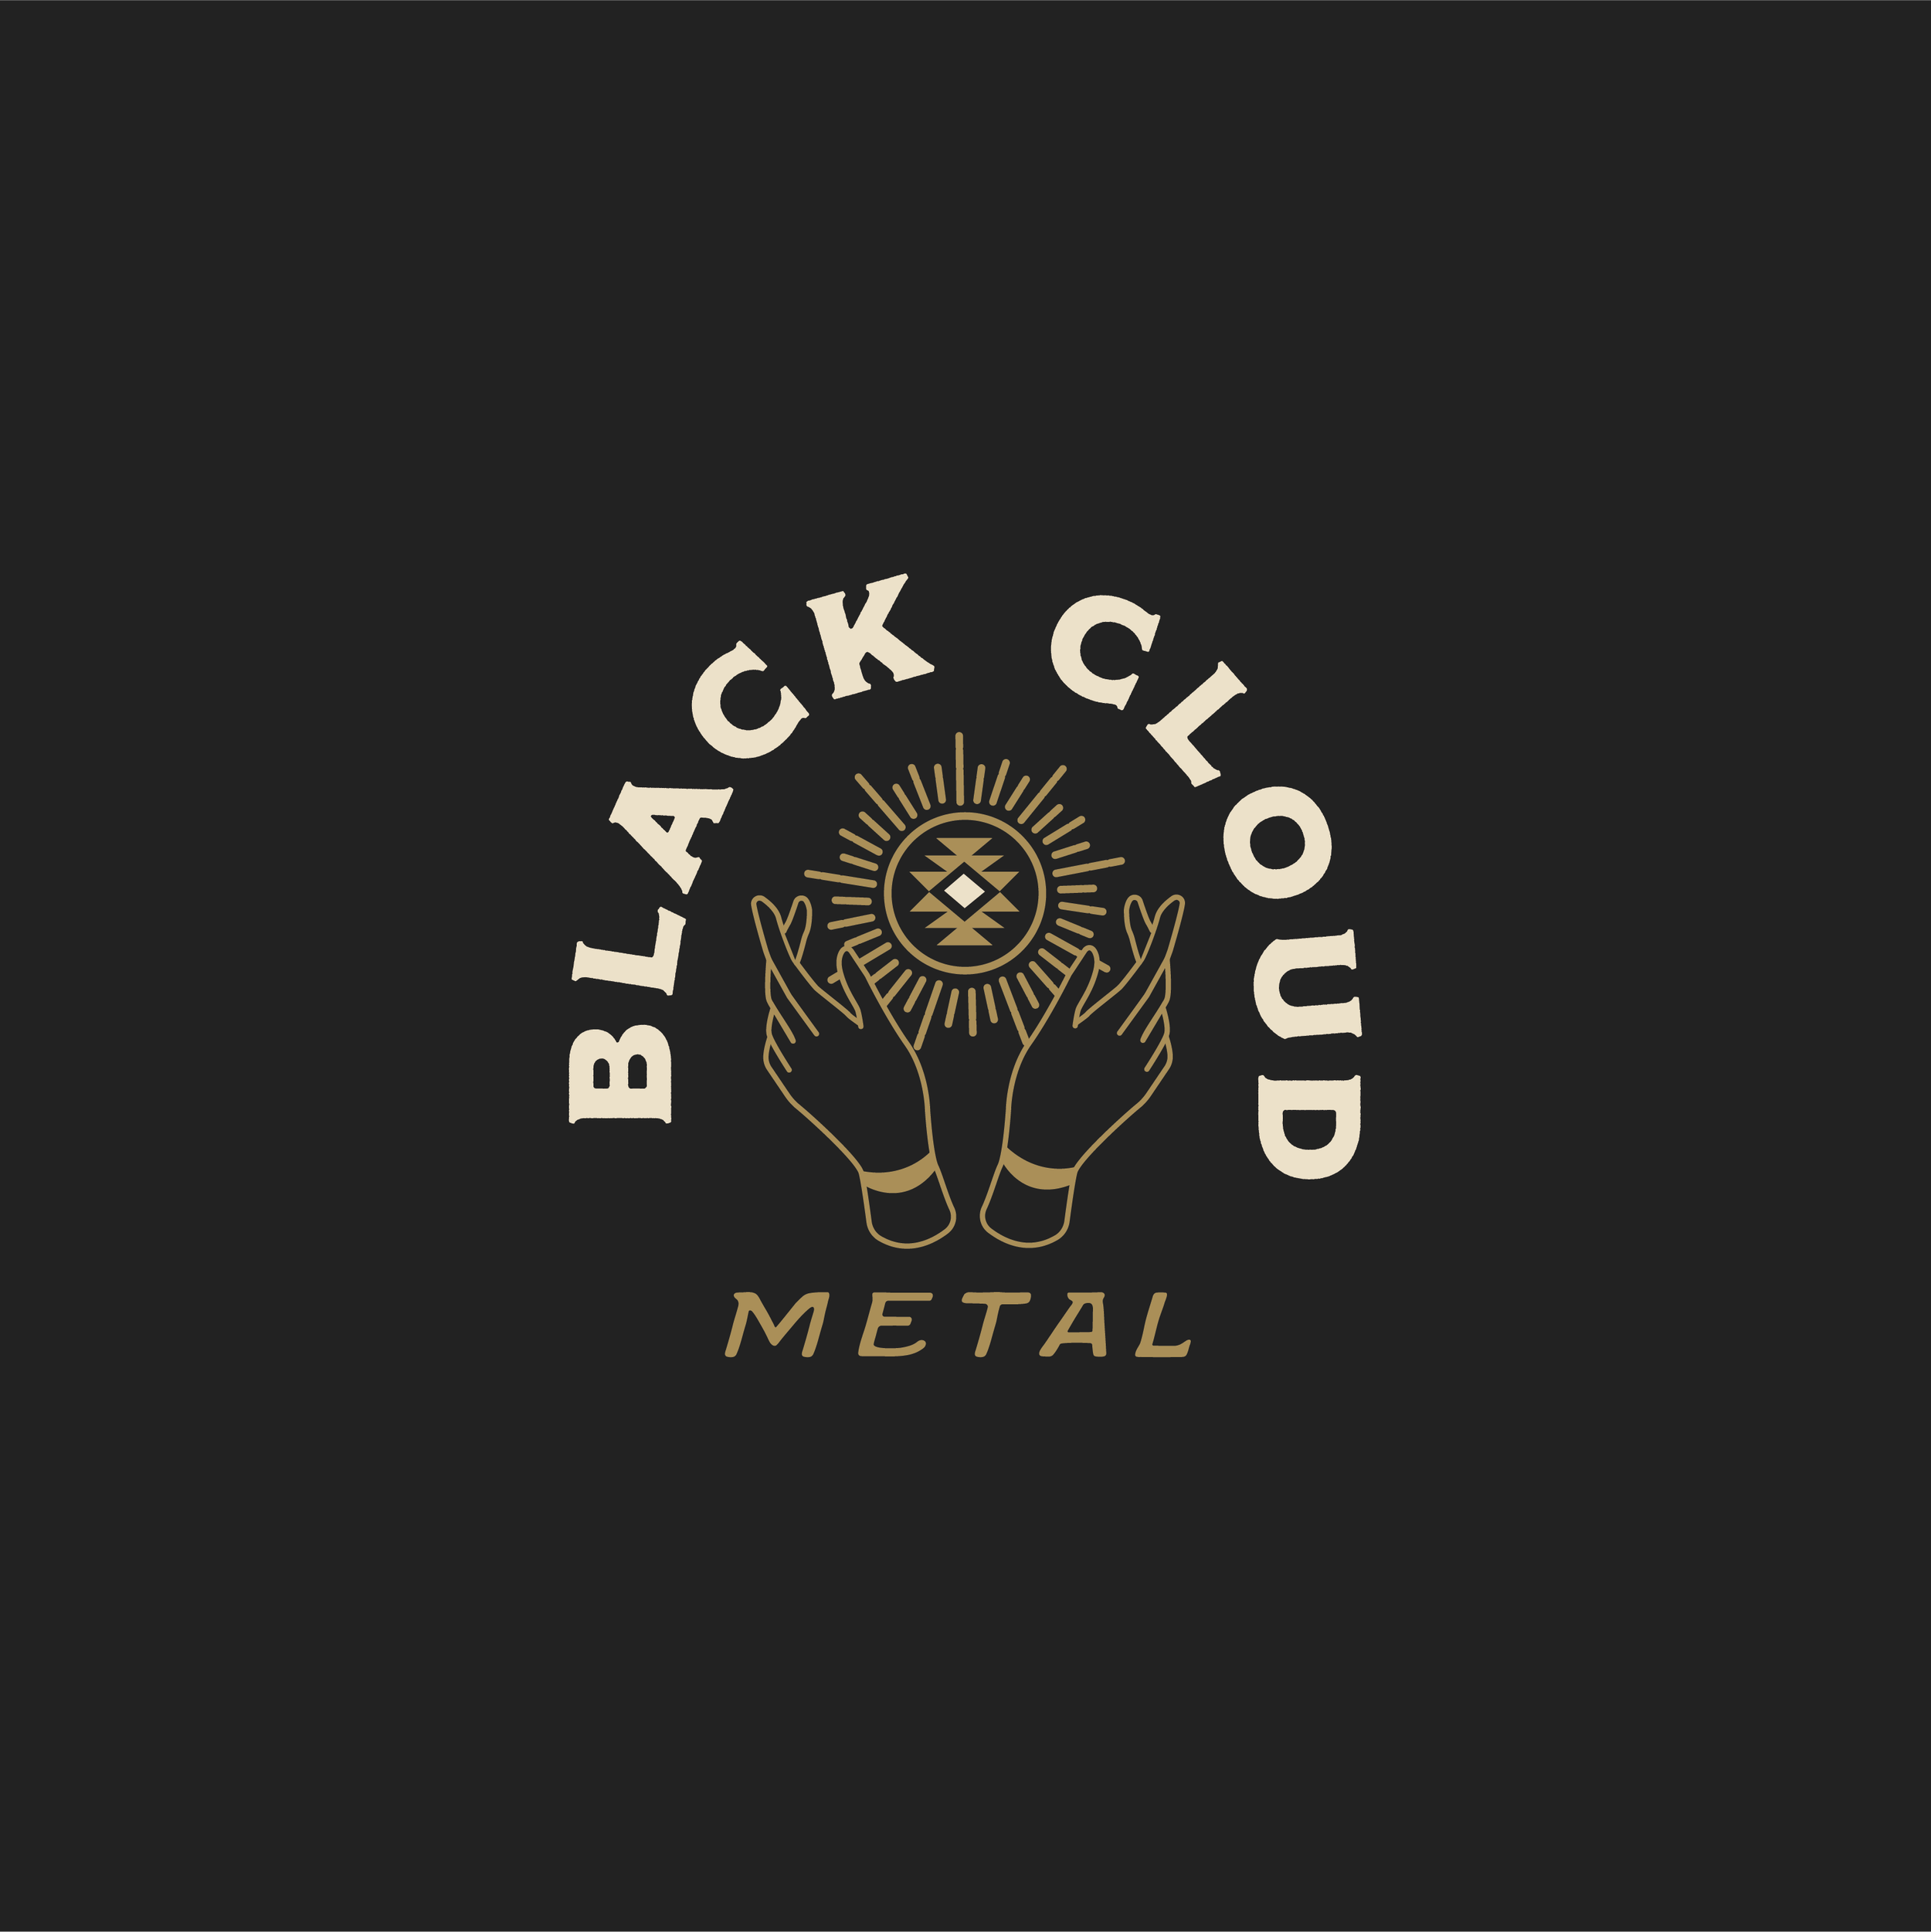 Black Cloud Metal